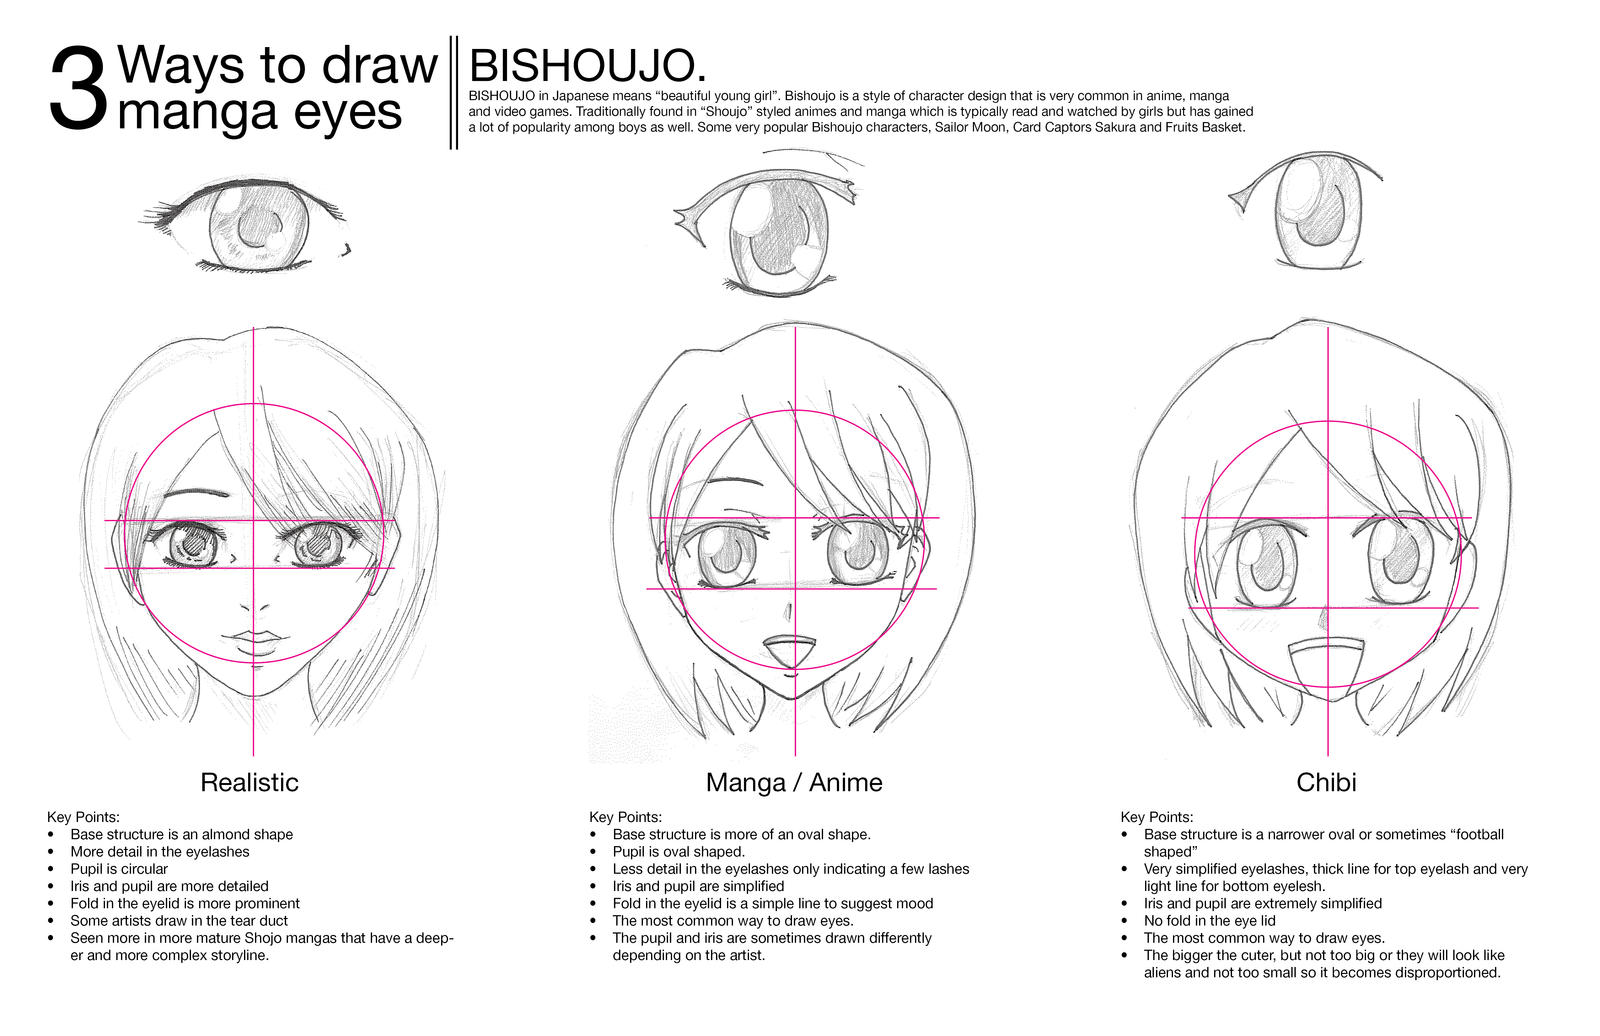 How to Draw Manga-Style Eyes - FeltMagnet